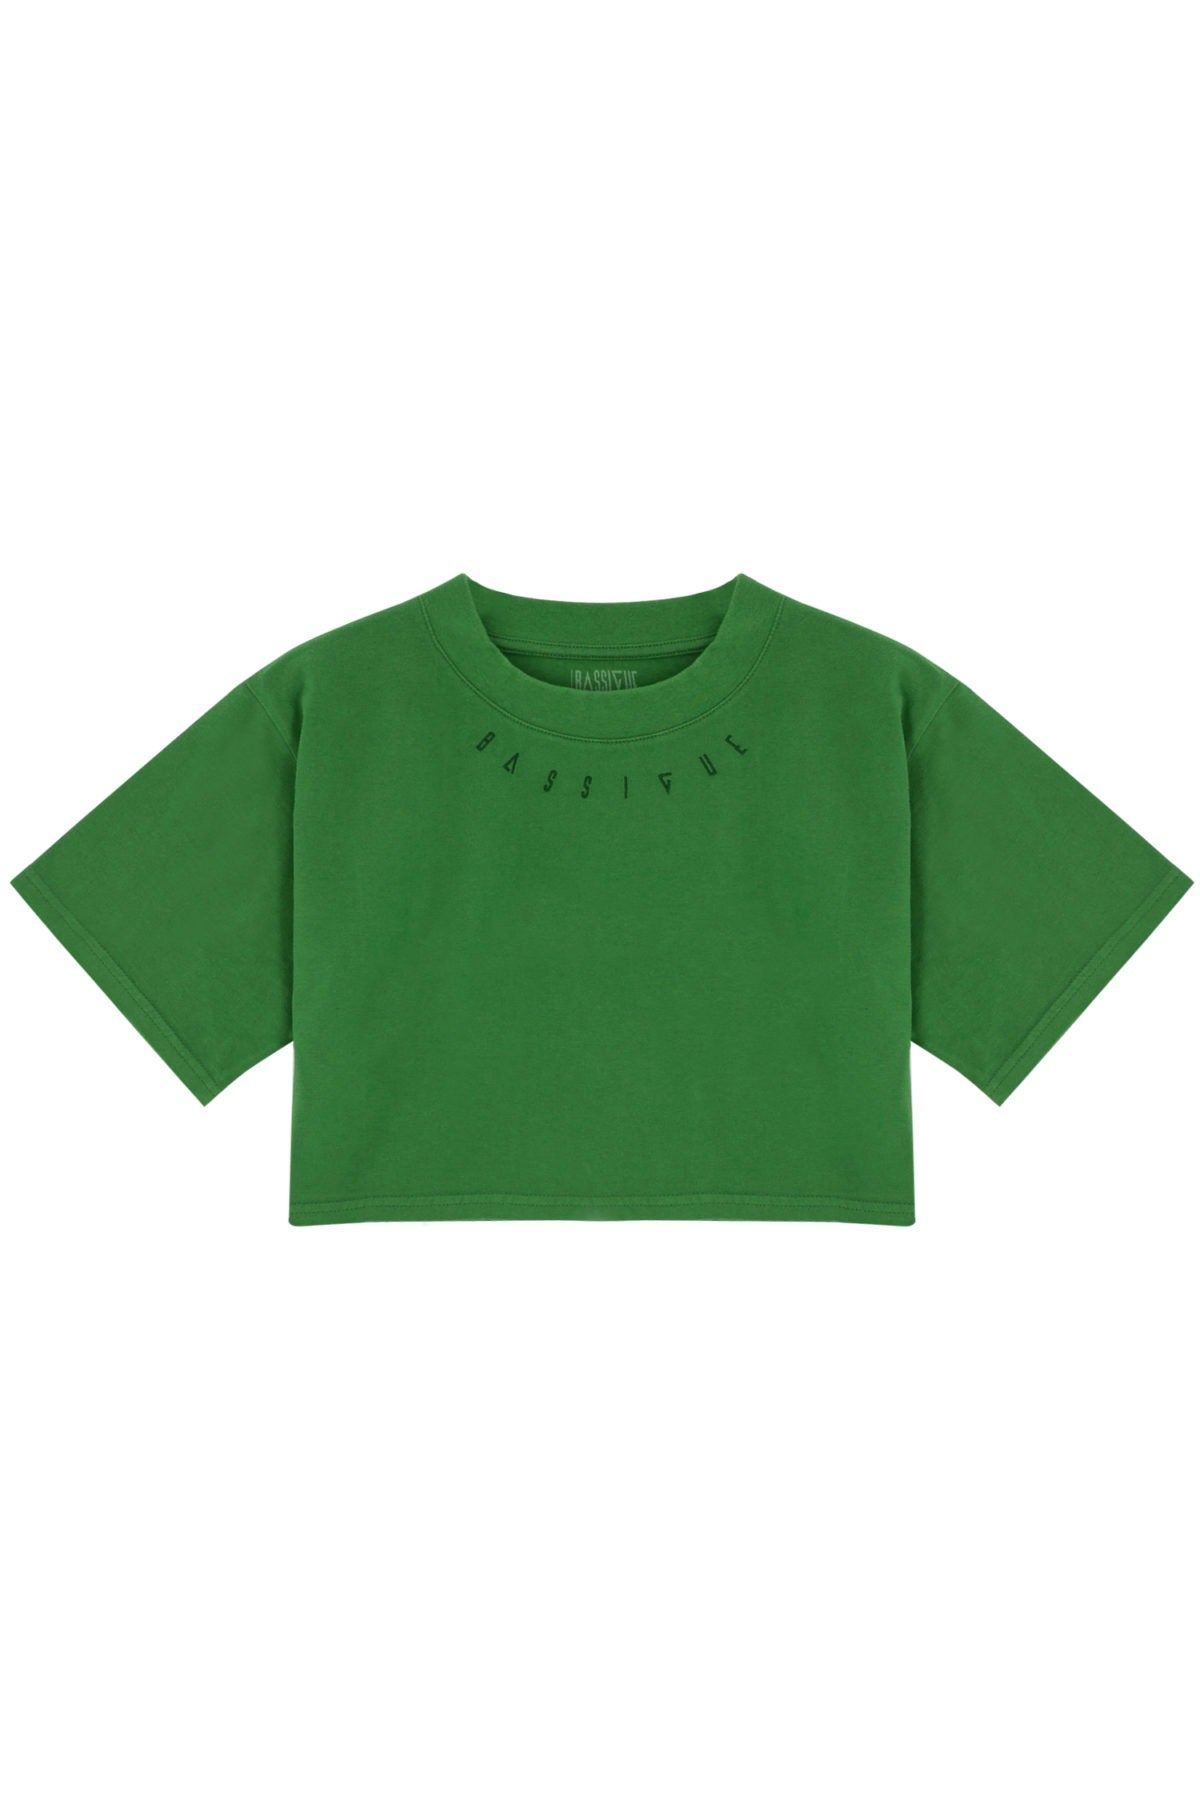 High Density Crop T-shirt - Verdant Green